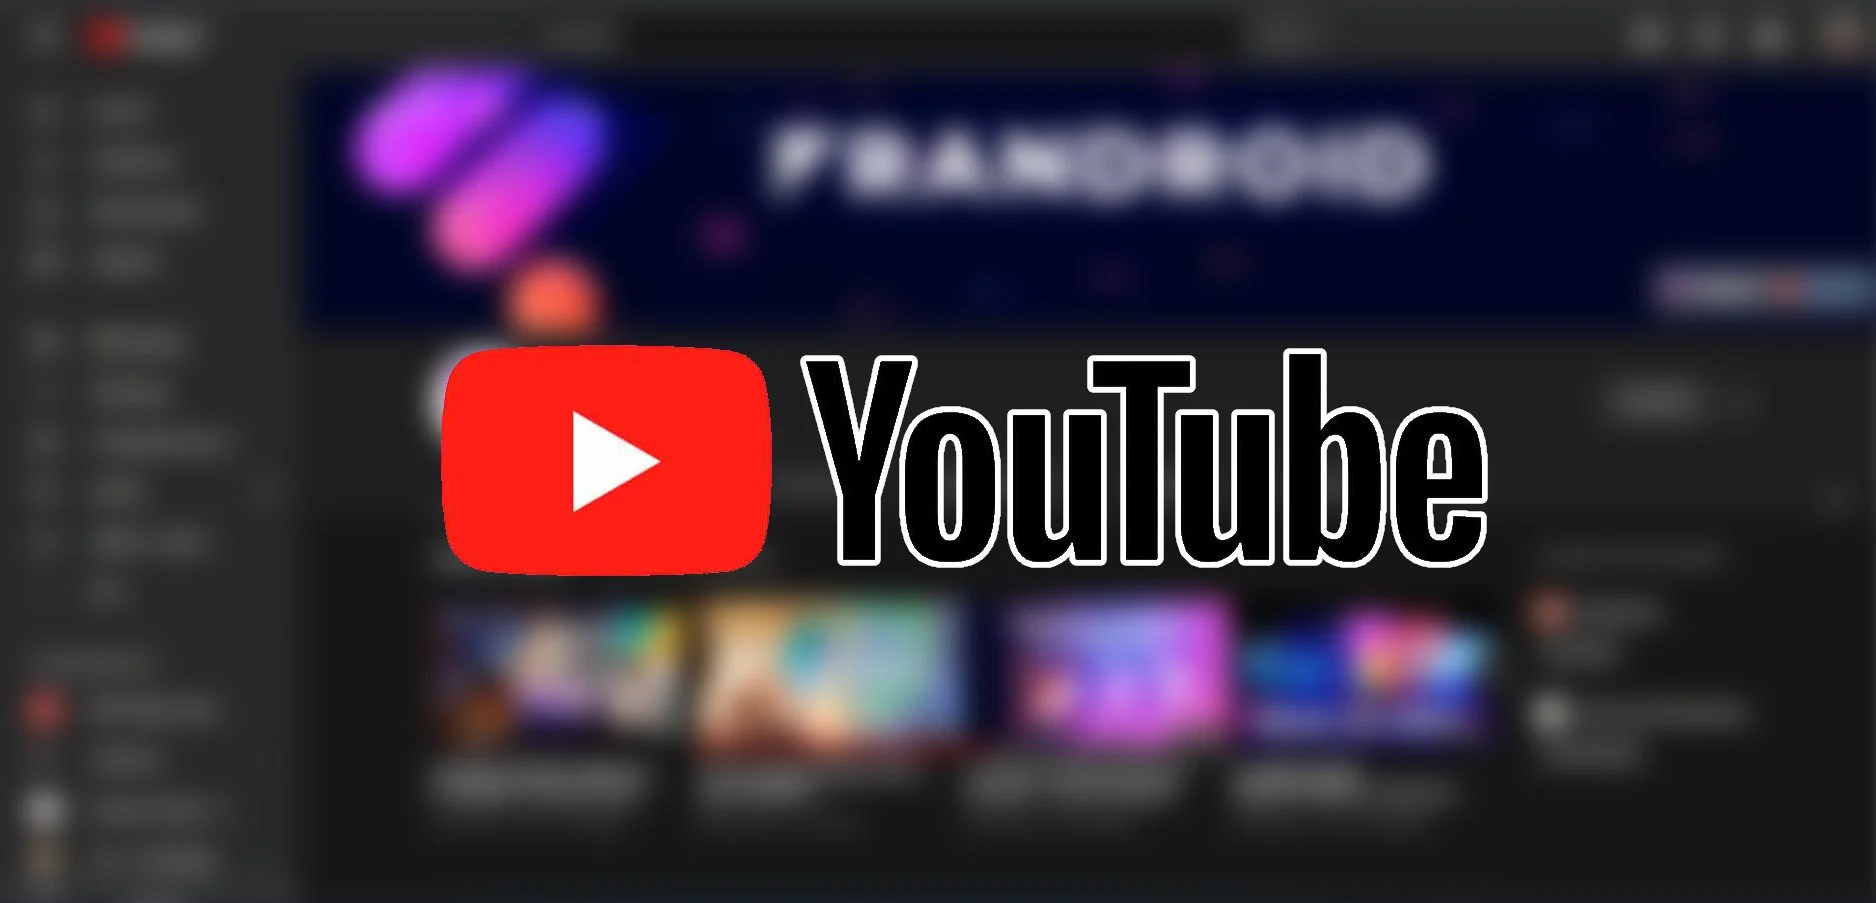 YouTube (web) améliore son mini lecteur, ses files d’attente et playlists